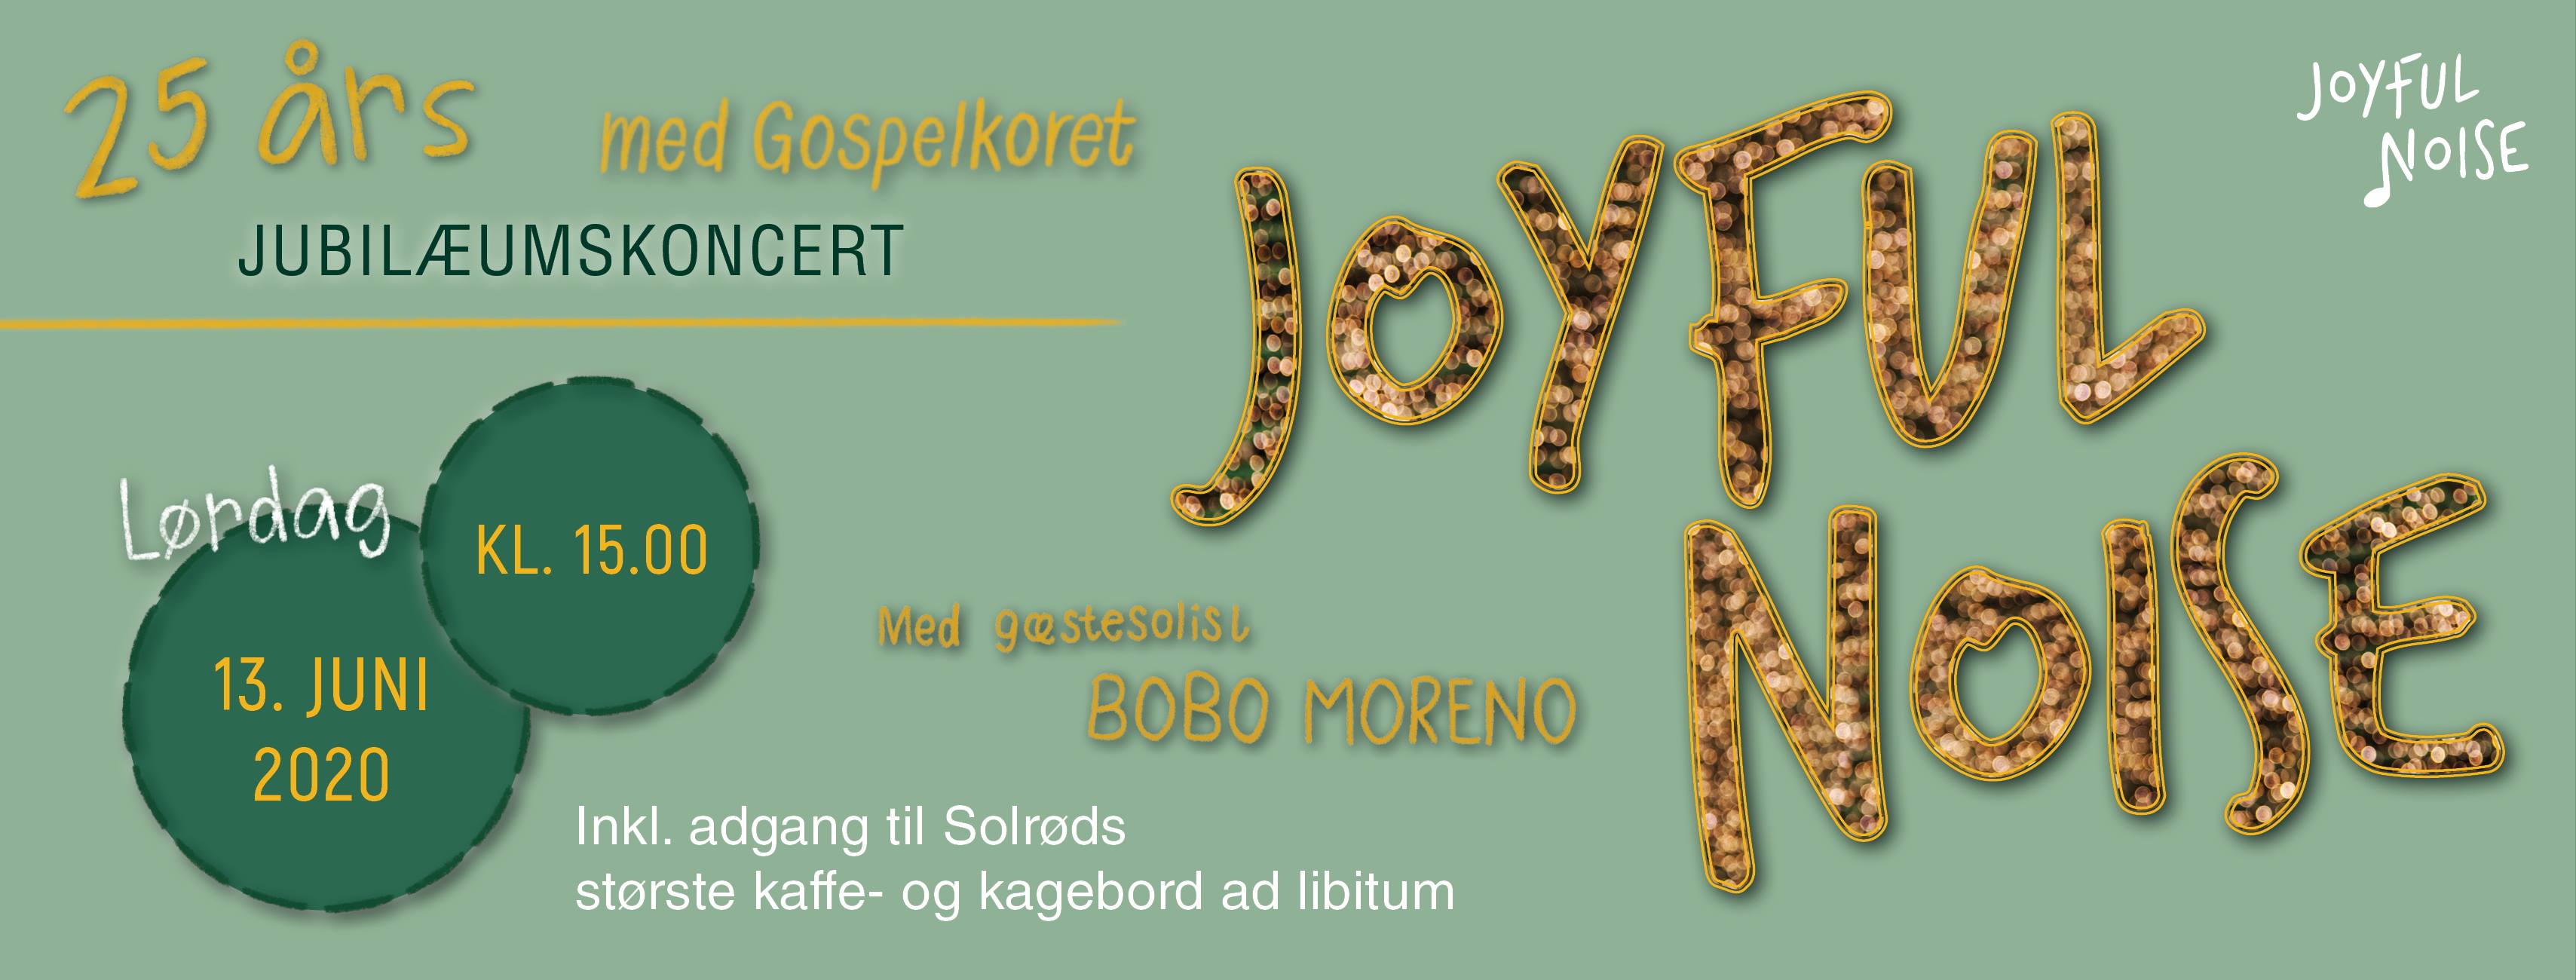 Joyful Noise 25 års jubilæumskoncert d. 13. juni 2020